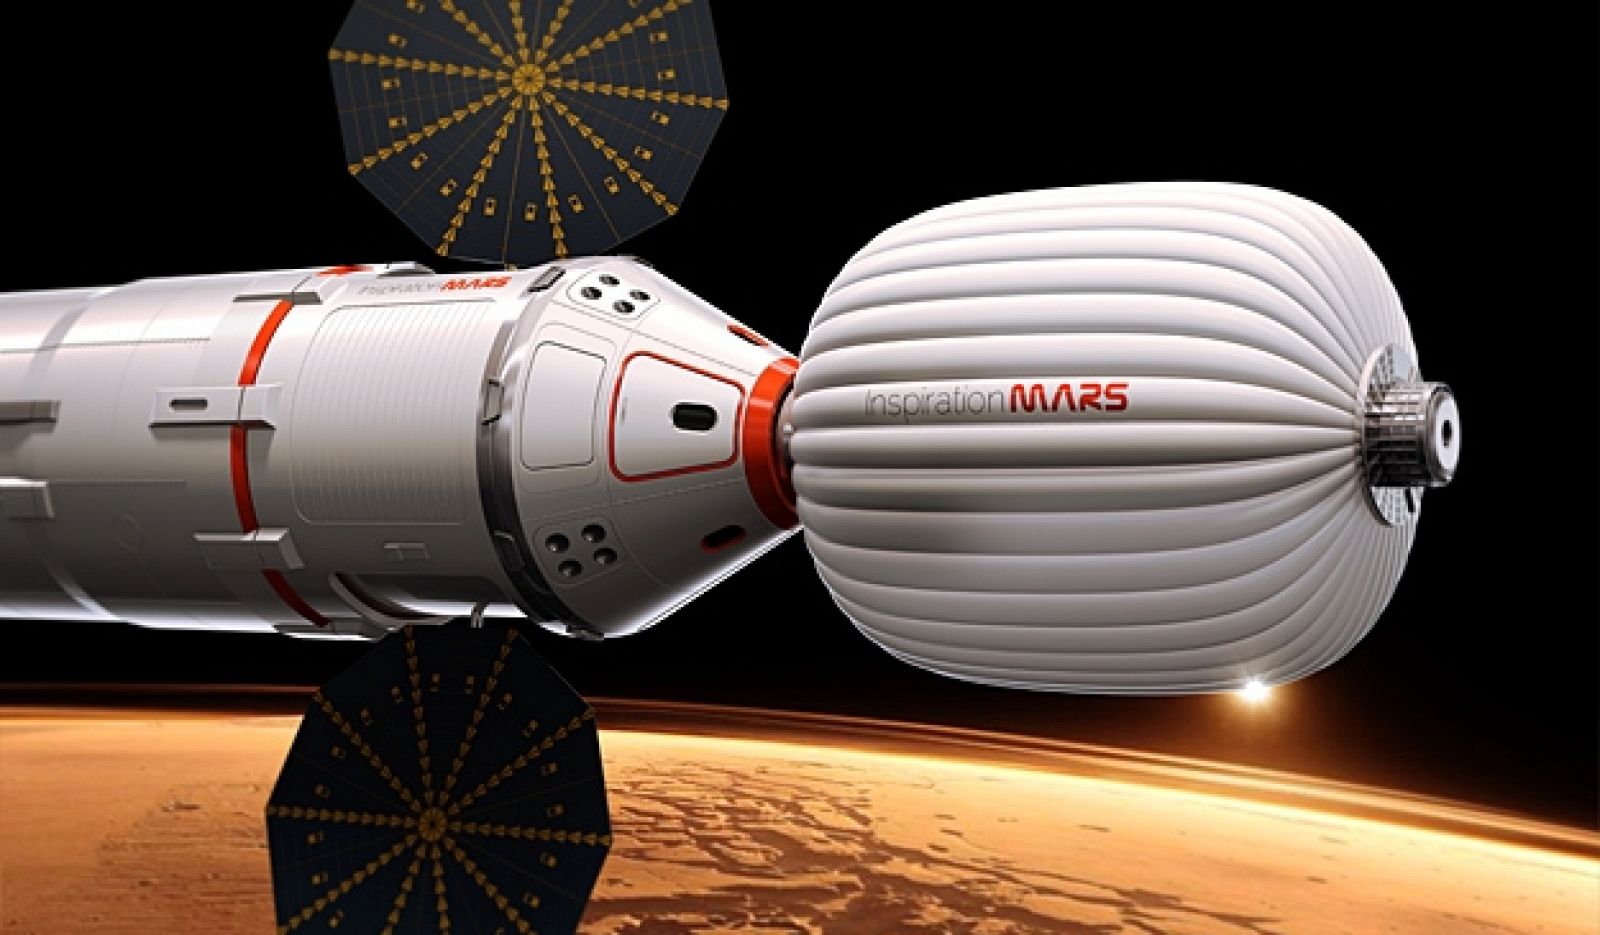 Análisis: ¿Podrá Inspiration Mars llevar dos astronautas a Marte en 2018?